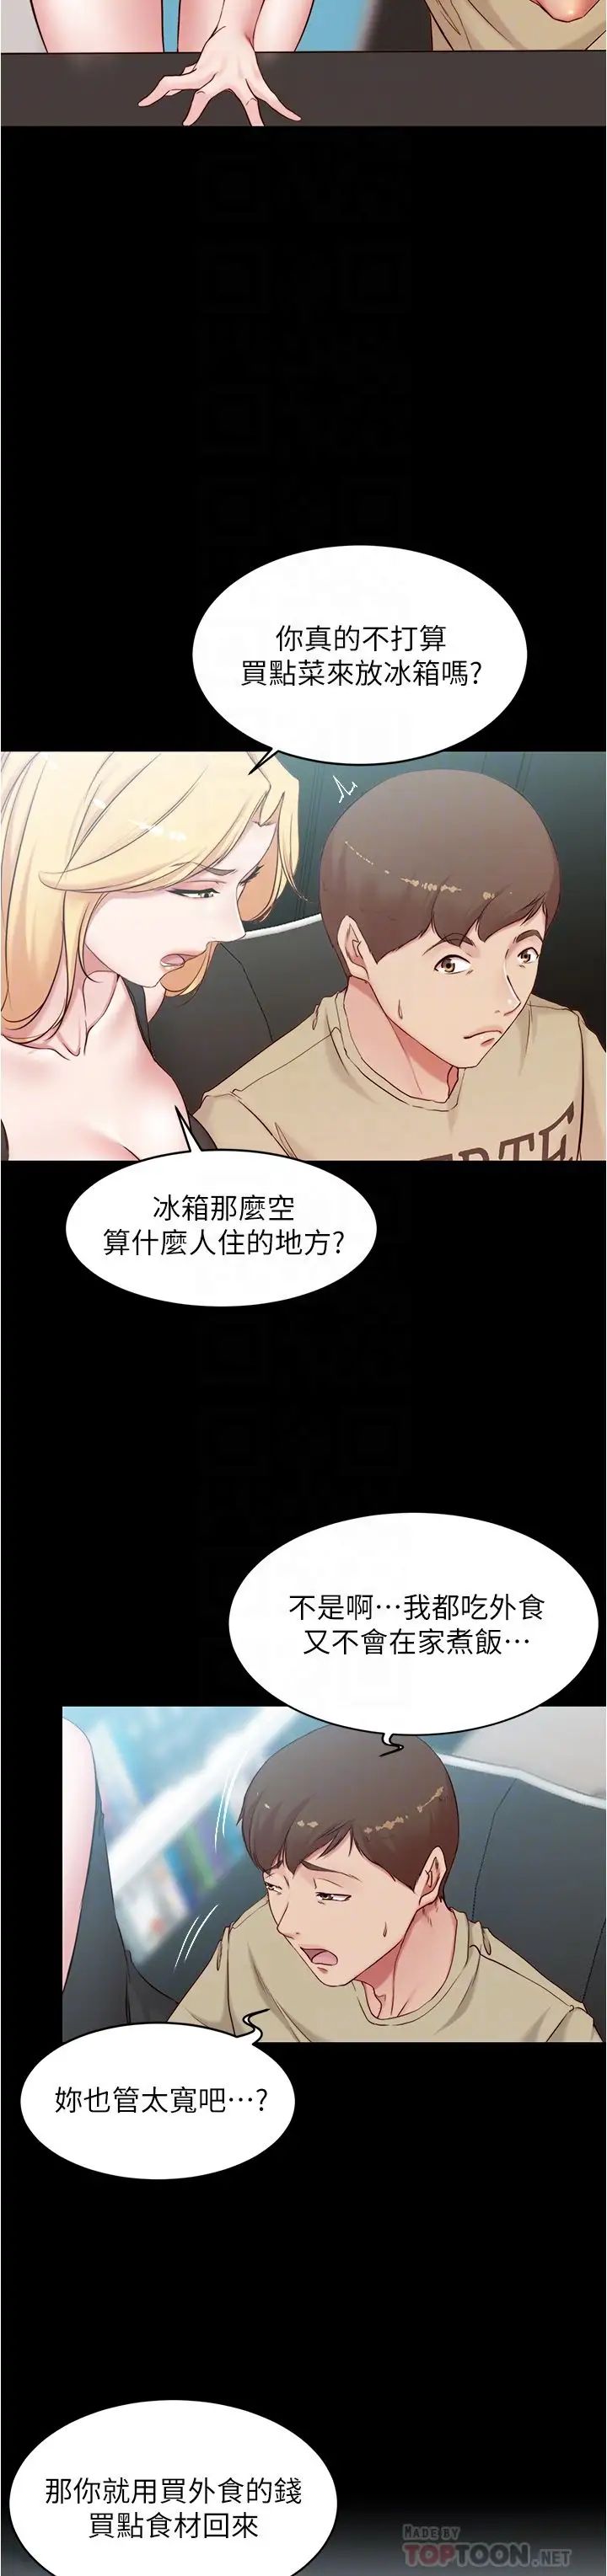 韩国污漫画 小褲褲筆記 第43话 好想看张穗桦的裸体…! 10